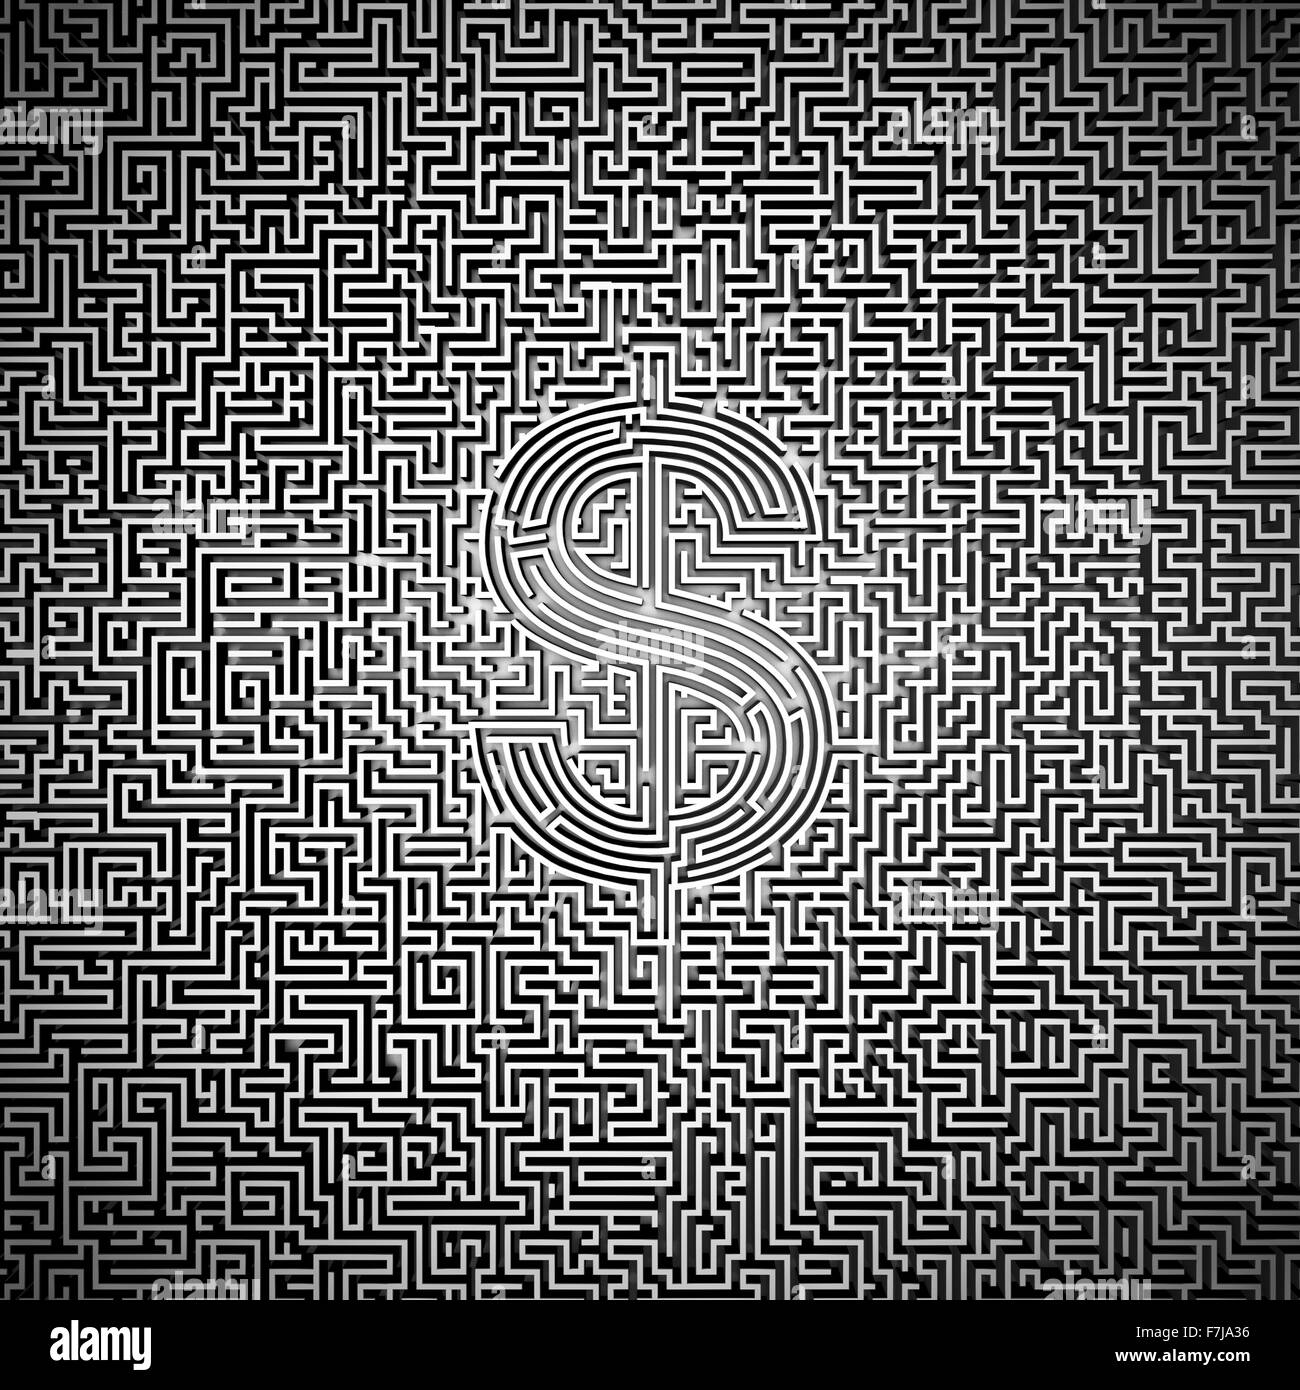 Ultimative Dollar Labyrinth / 3D-Render des Riesen-Labyrinth mit Dollar-Symbol im Zentrum Stockfoto